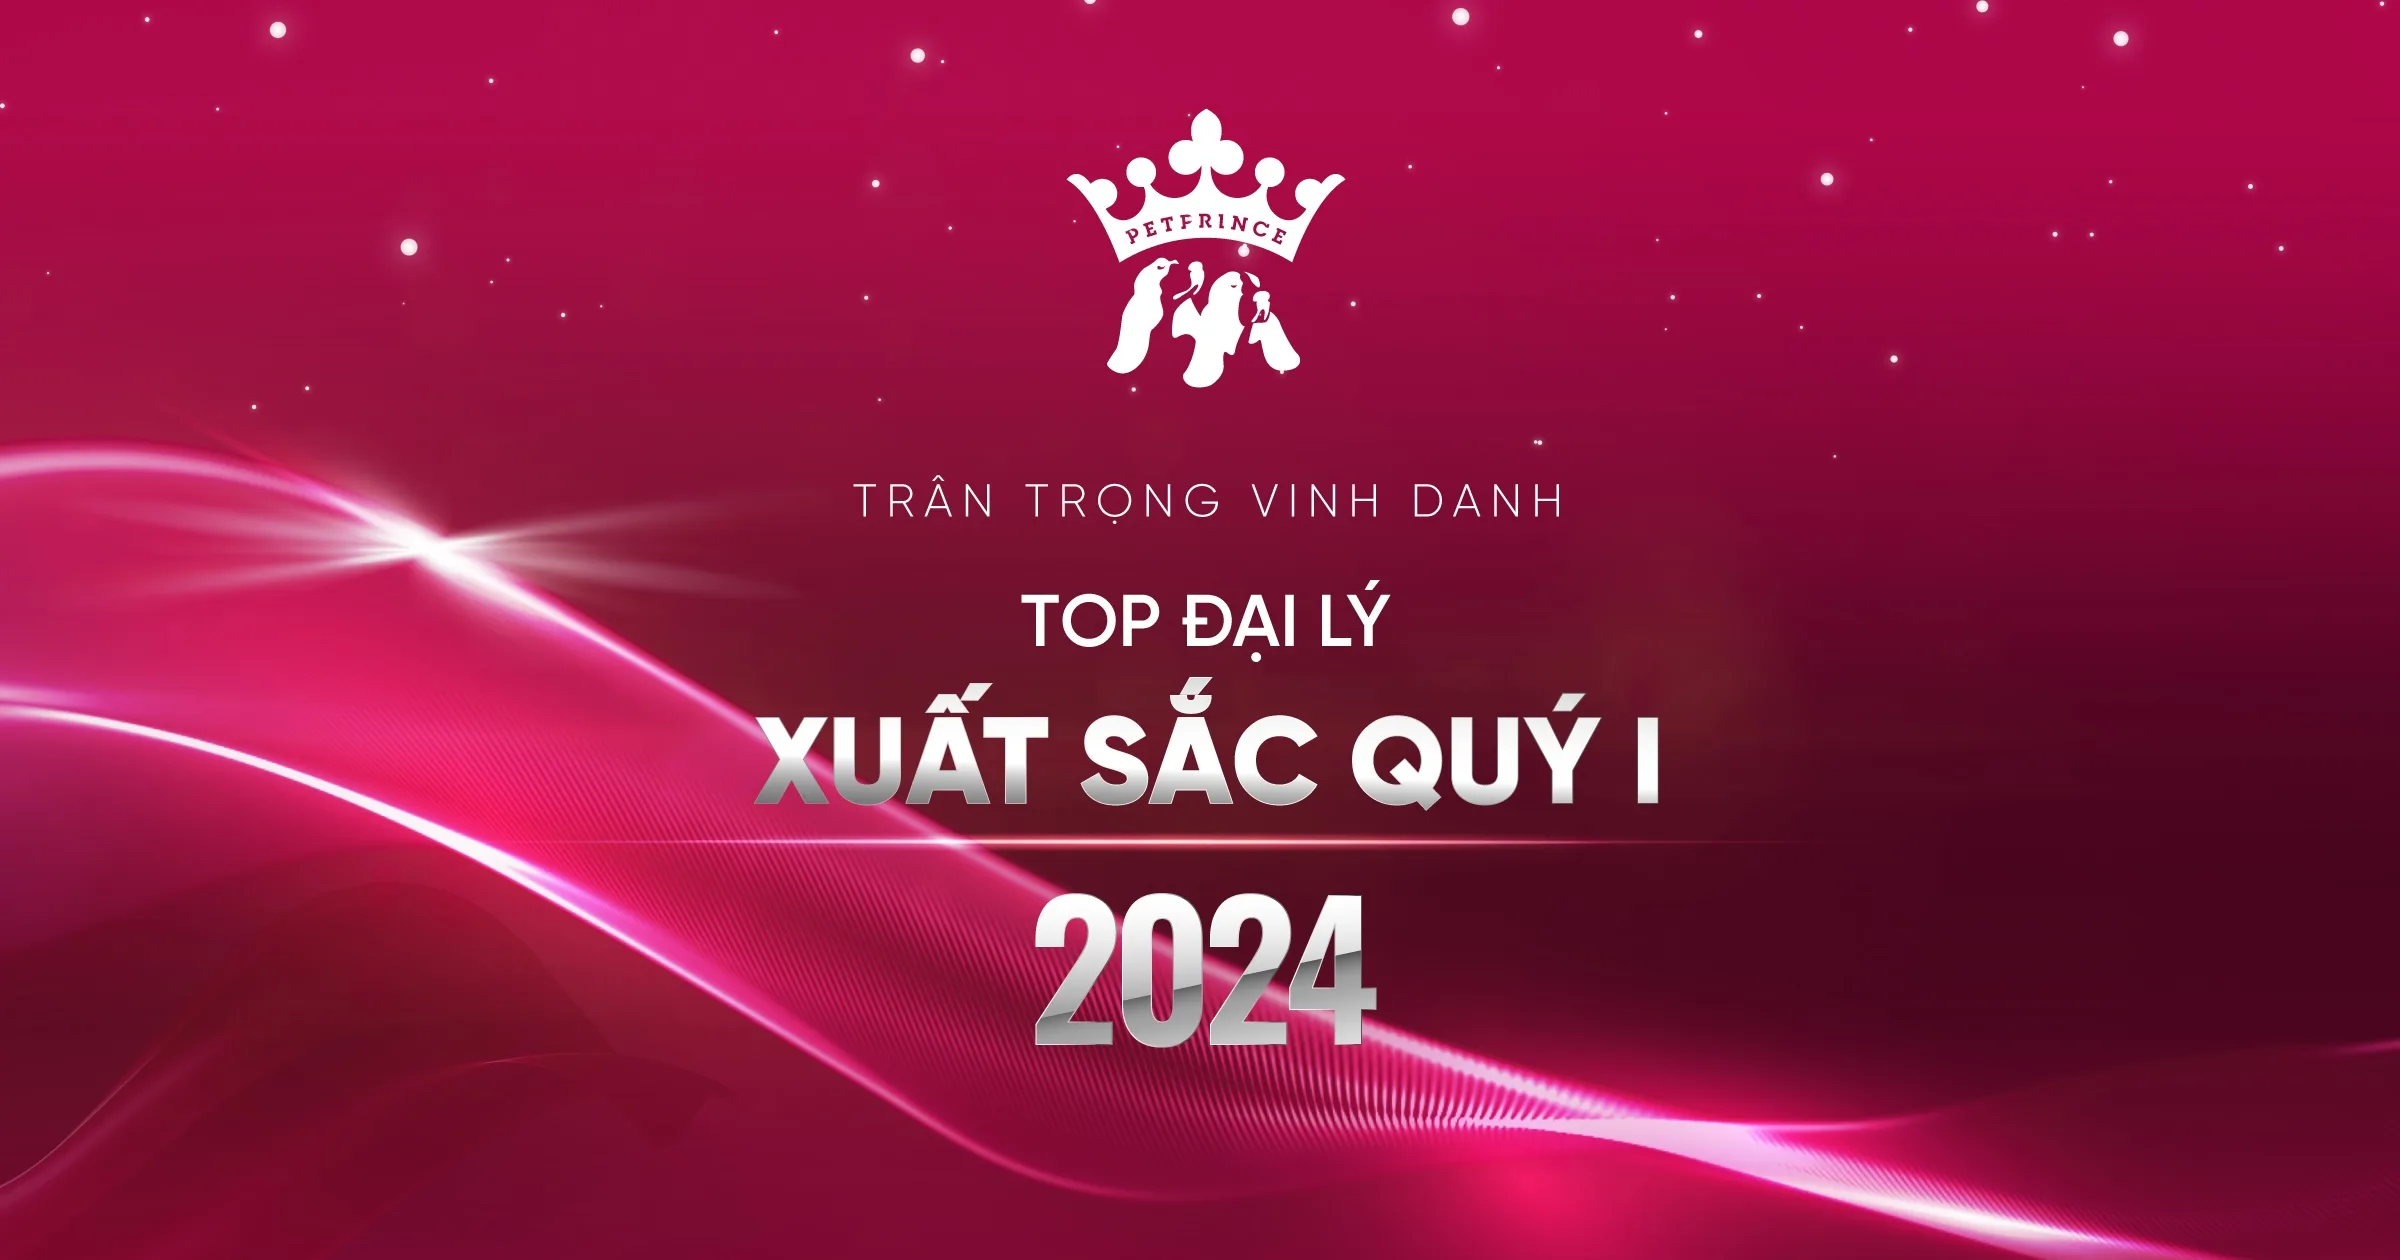 VINH DANH DAI LY QUY I NAM 2024